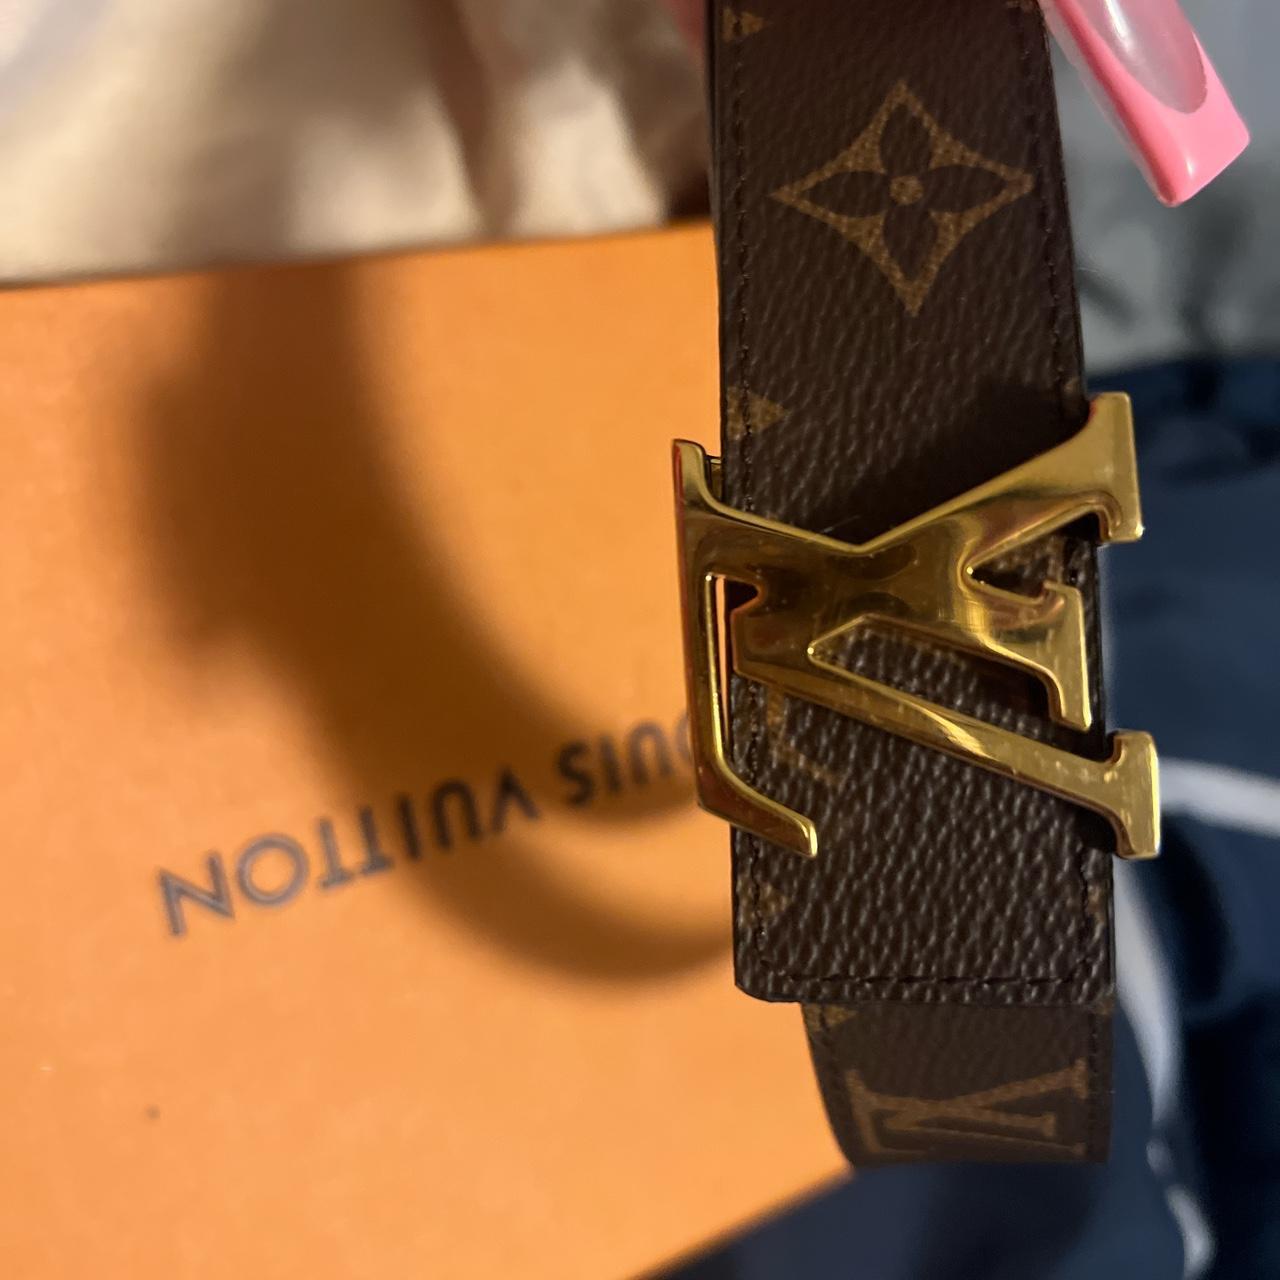 Authentic Louis Vuitton Belt - Depop